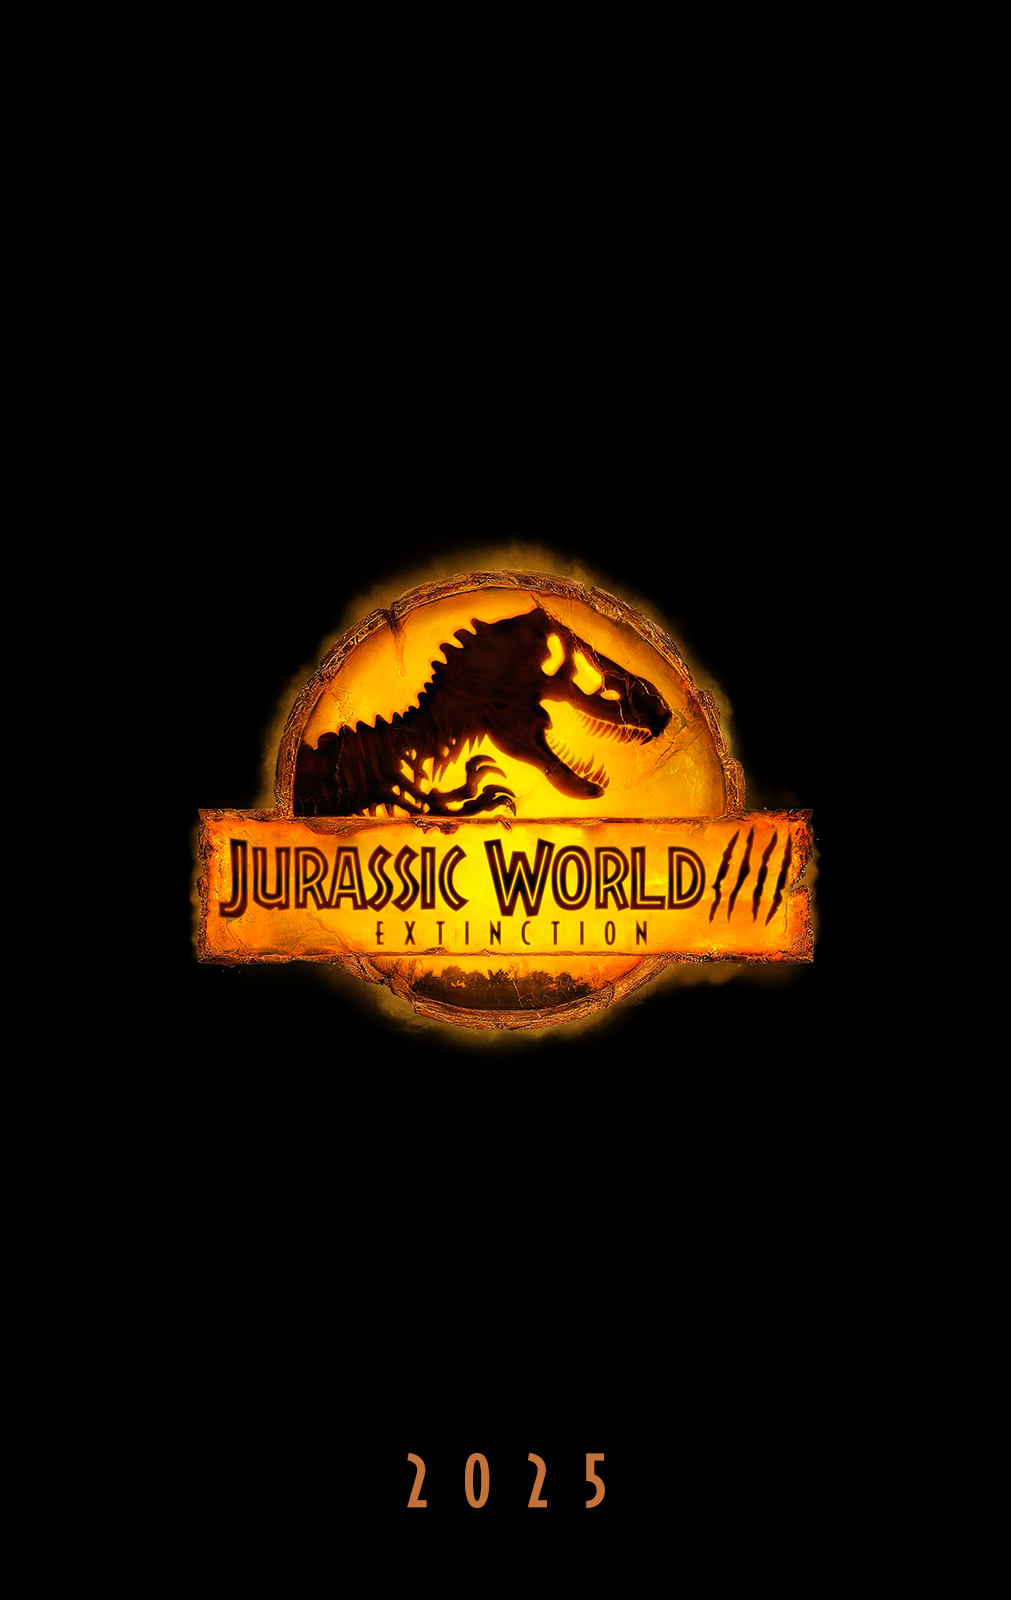 Jurassic World 4 Extinction Teaser poster 2025 xd by Andrewvm on DeviantArt